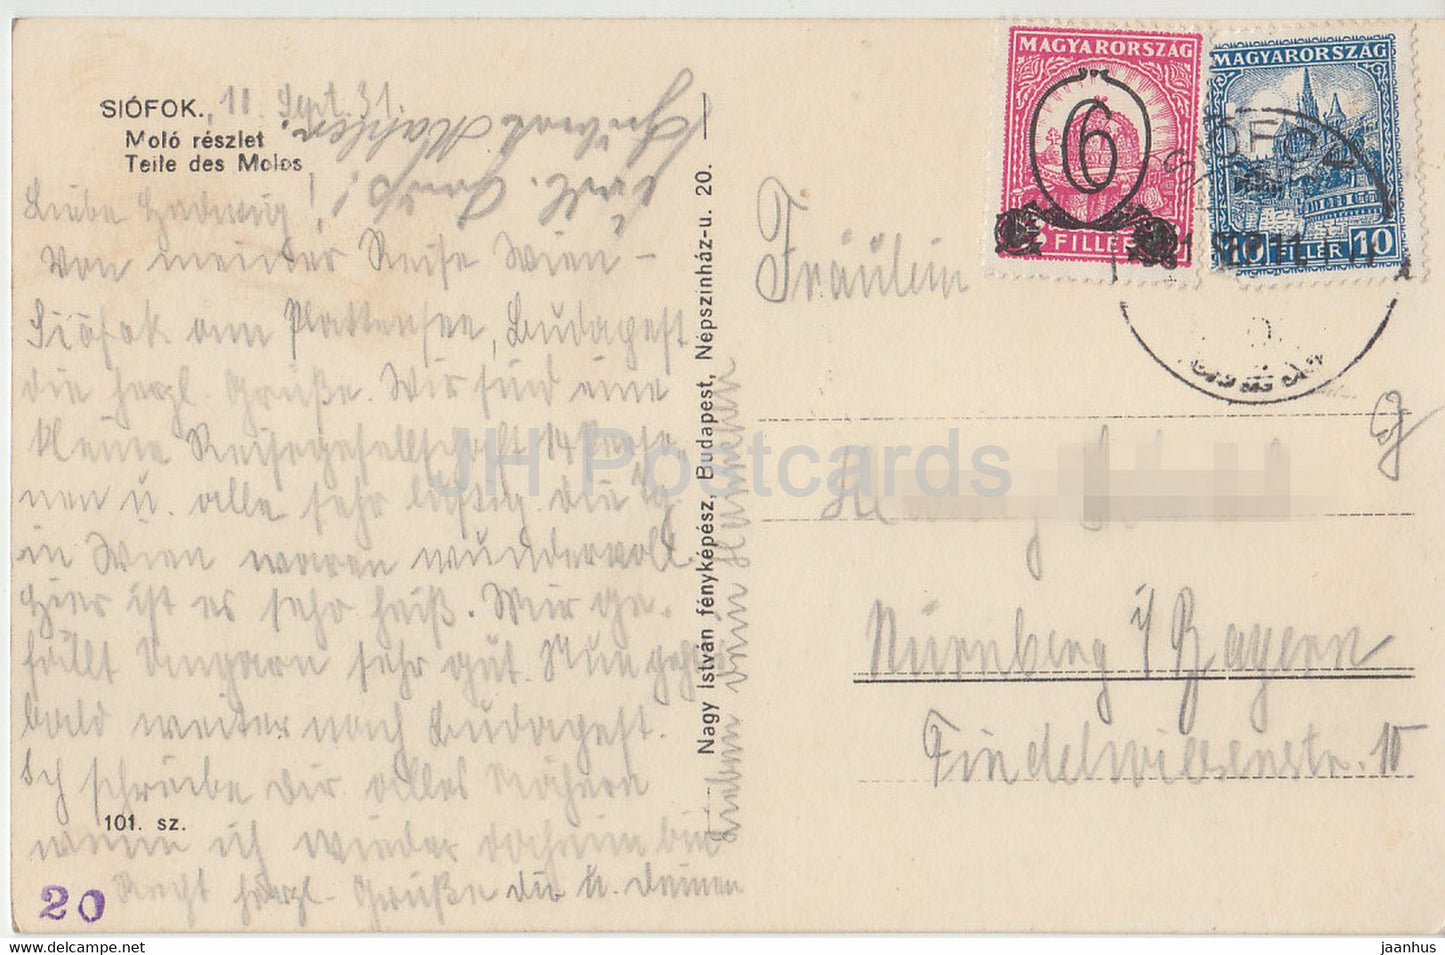 Siofok - Molo reszlet - Teile des Molos - jetée - carte postale ancienne - 1931 - Hongrie - utilisé